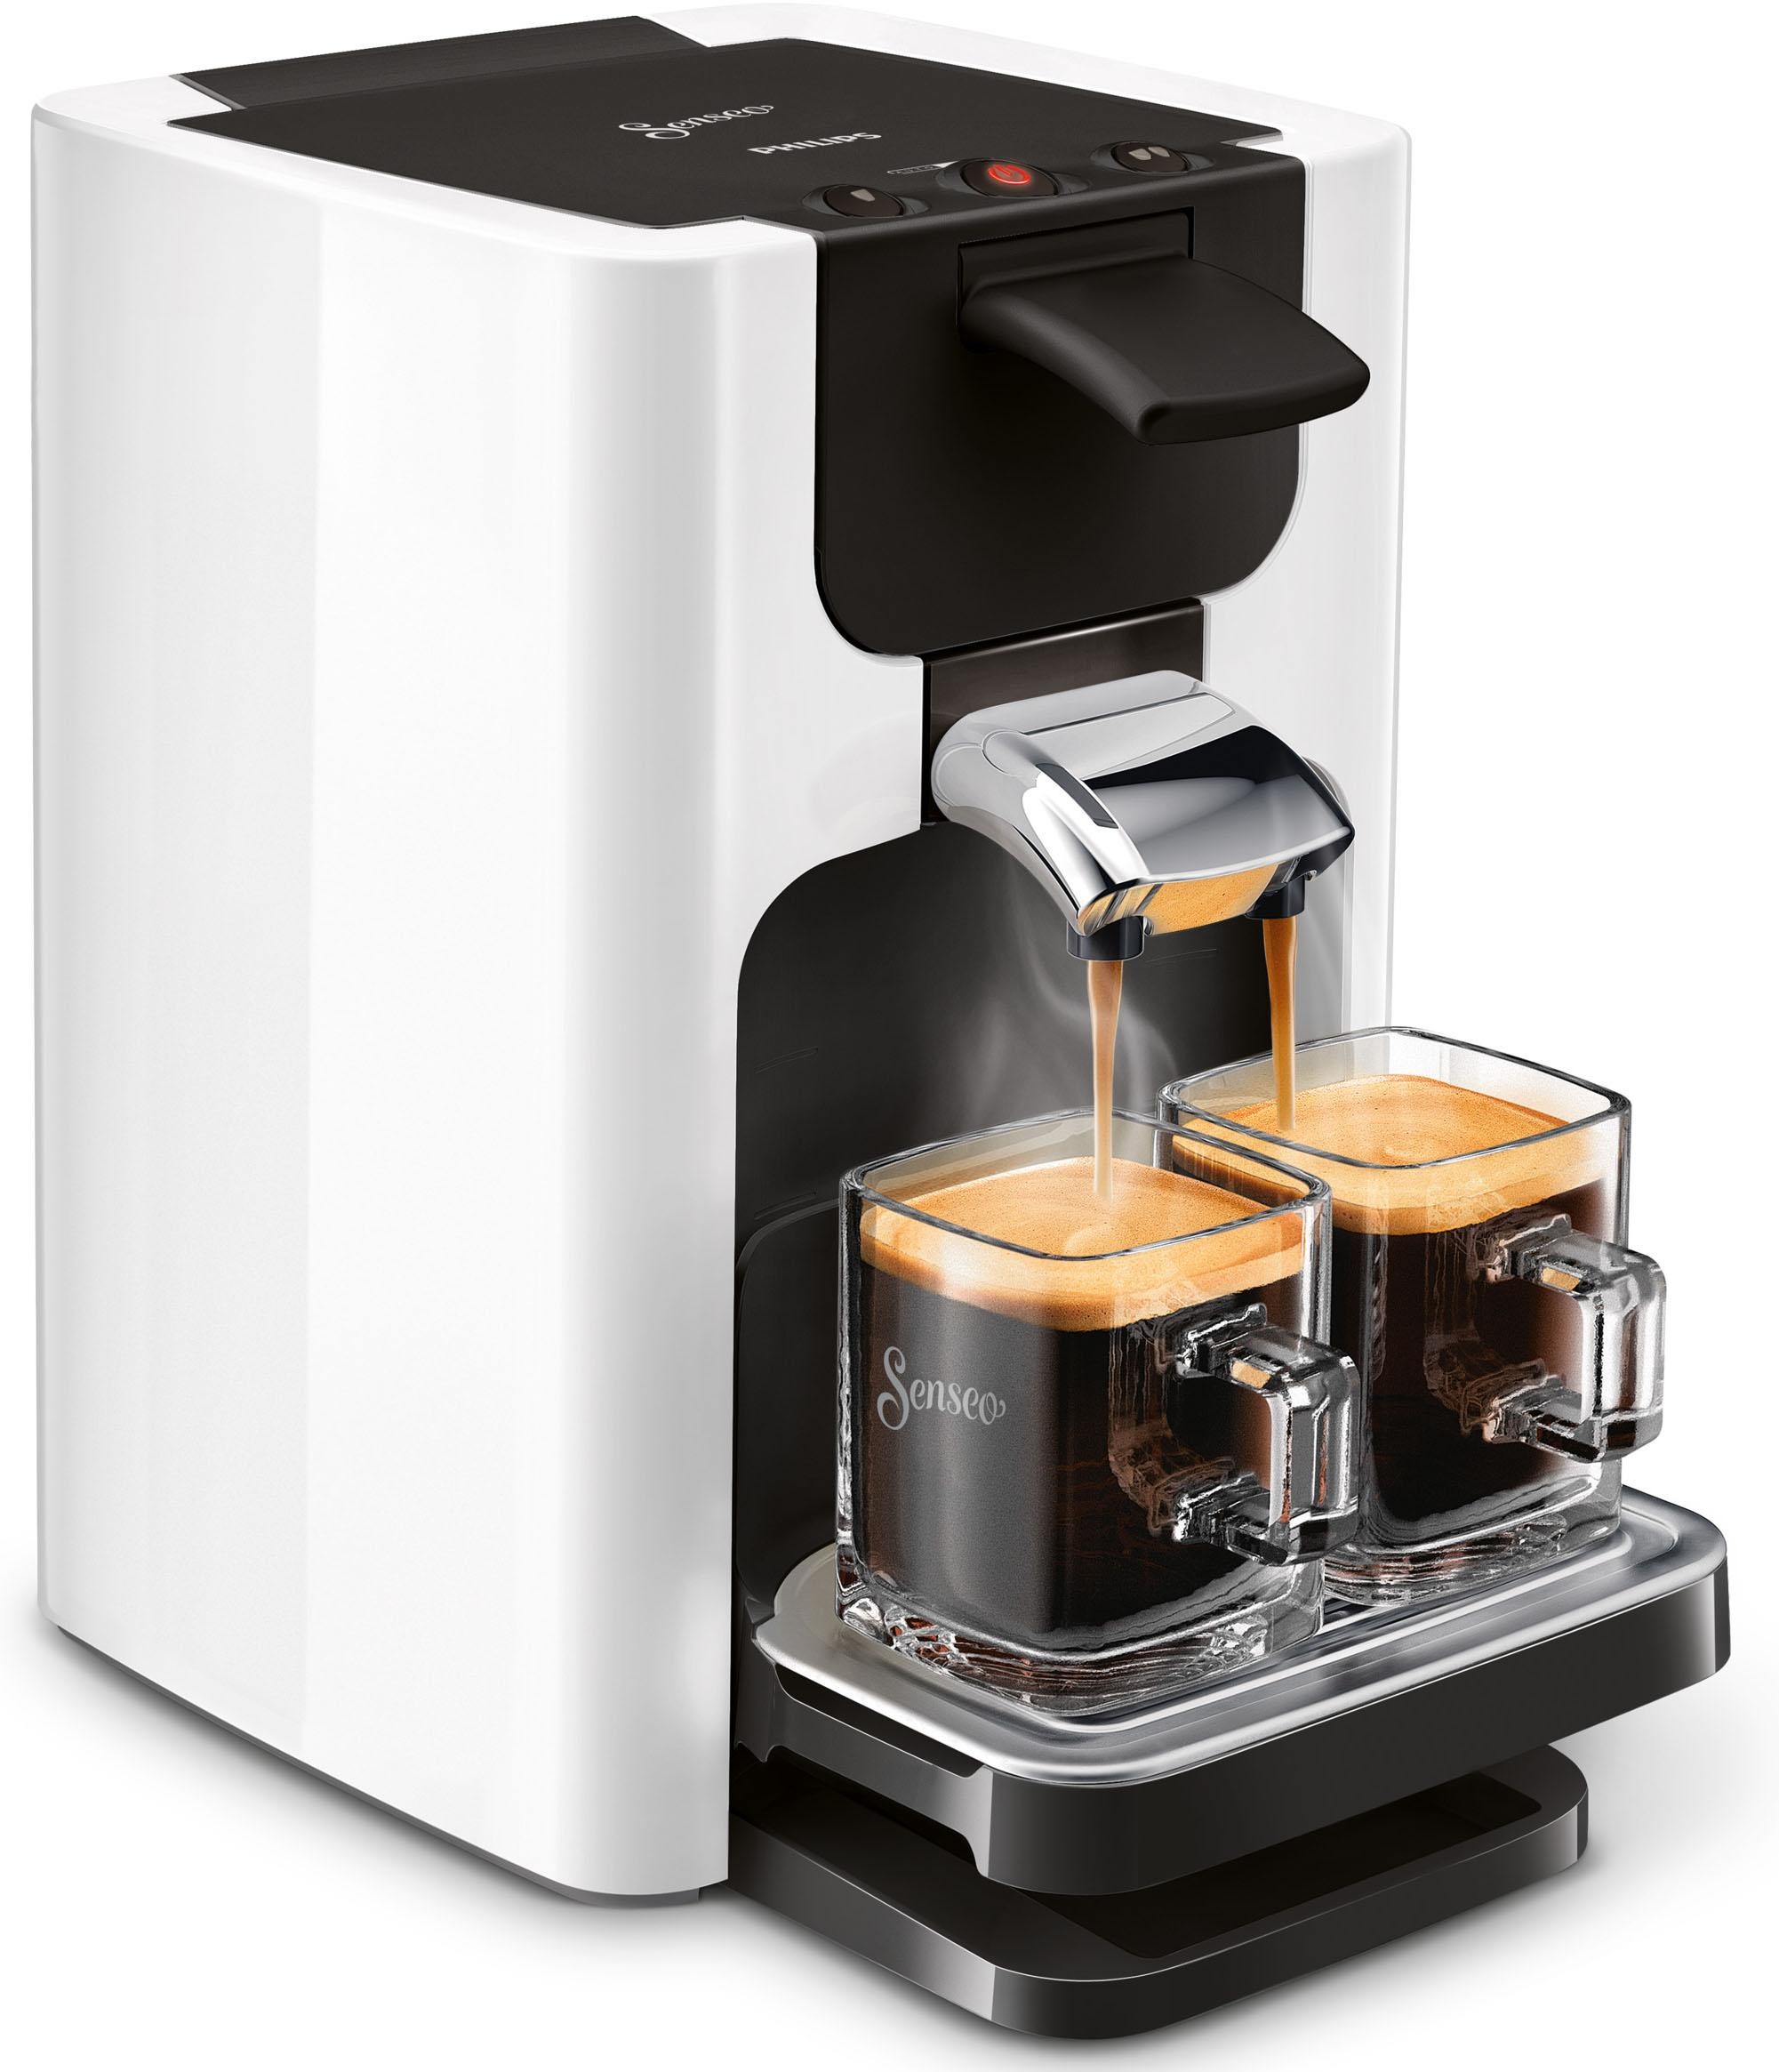 € jetzt UVP kaufen Kaffeepadmaschine inkl. OTTO 23,90 Philips im Wert HD7865/00«, von Gratis-Zugaben bei »Quadrante Senseo